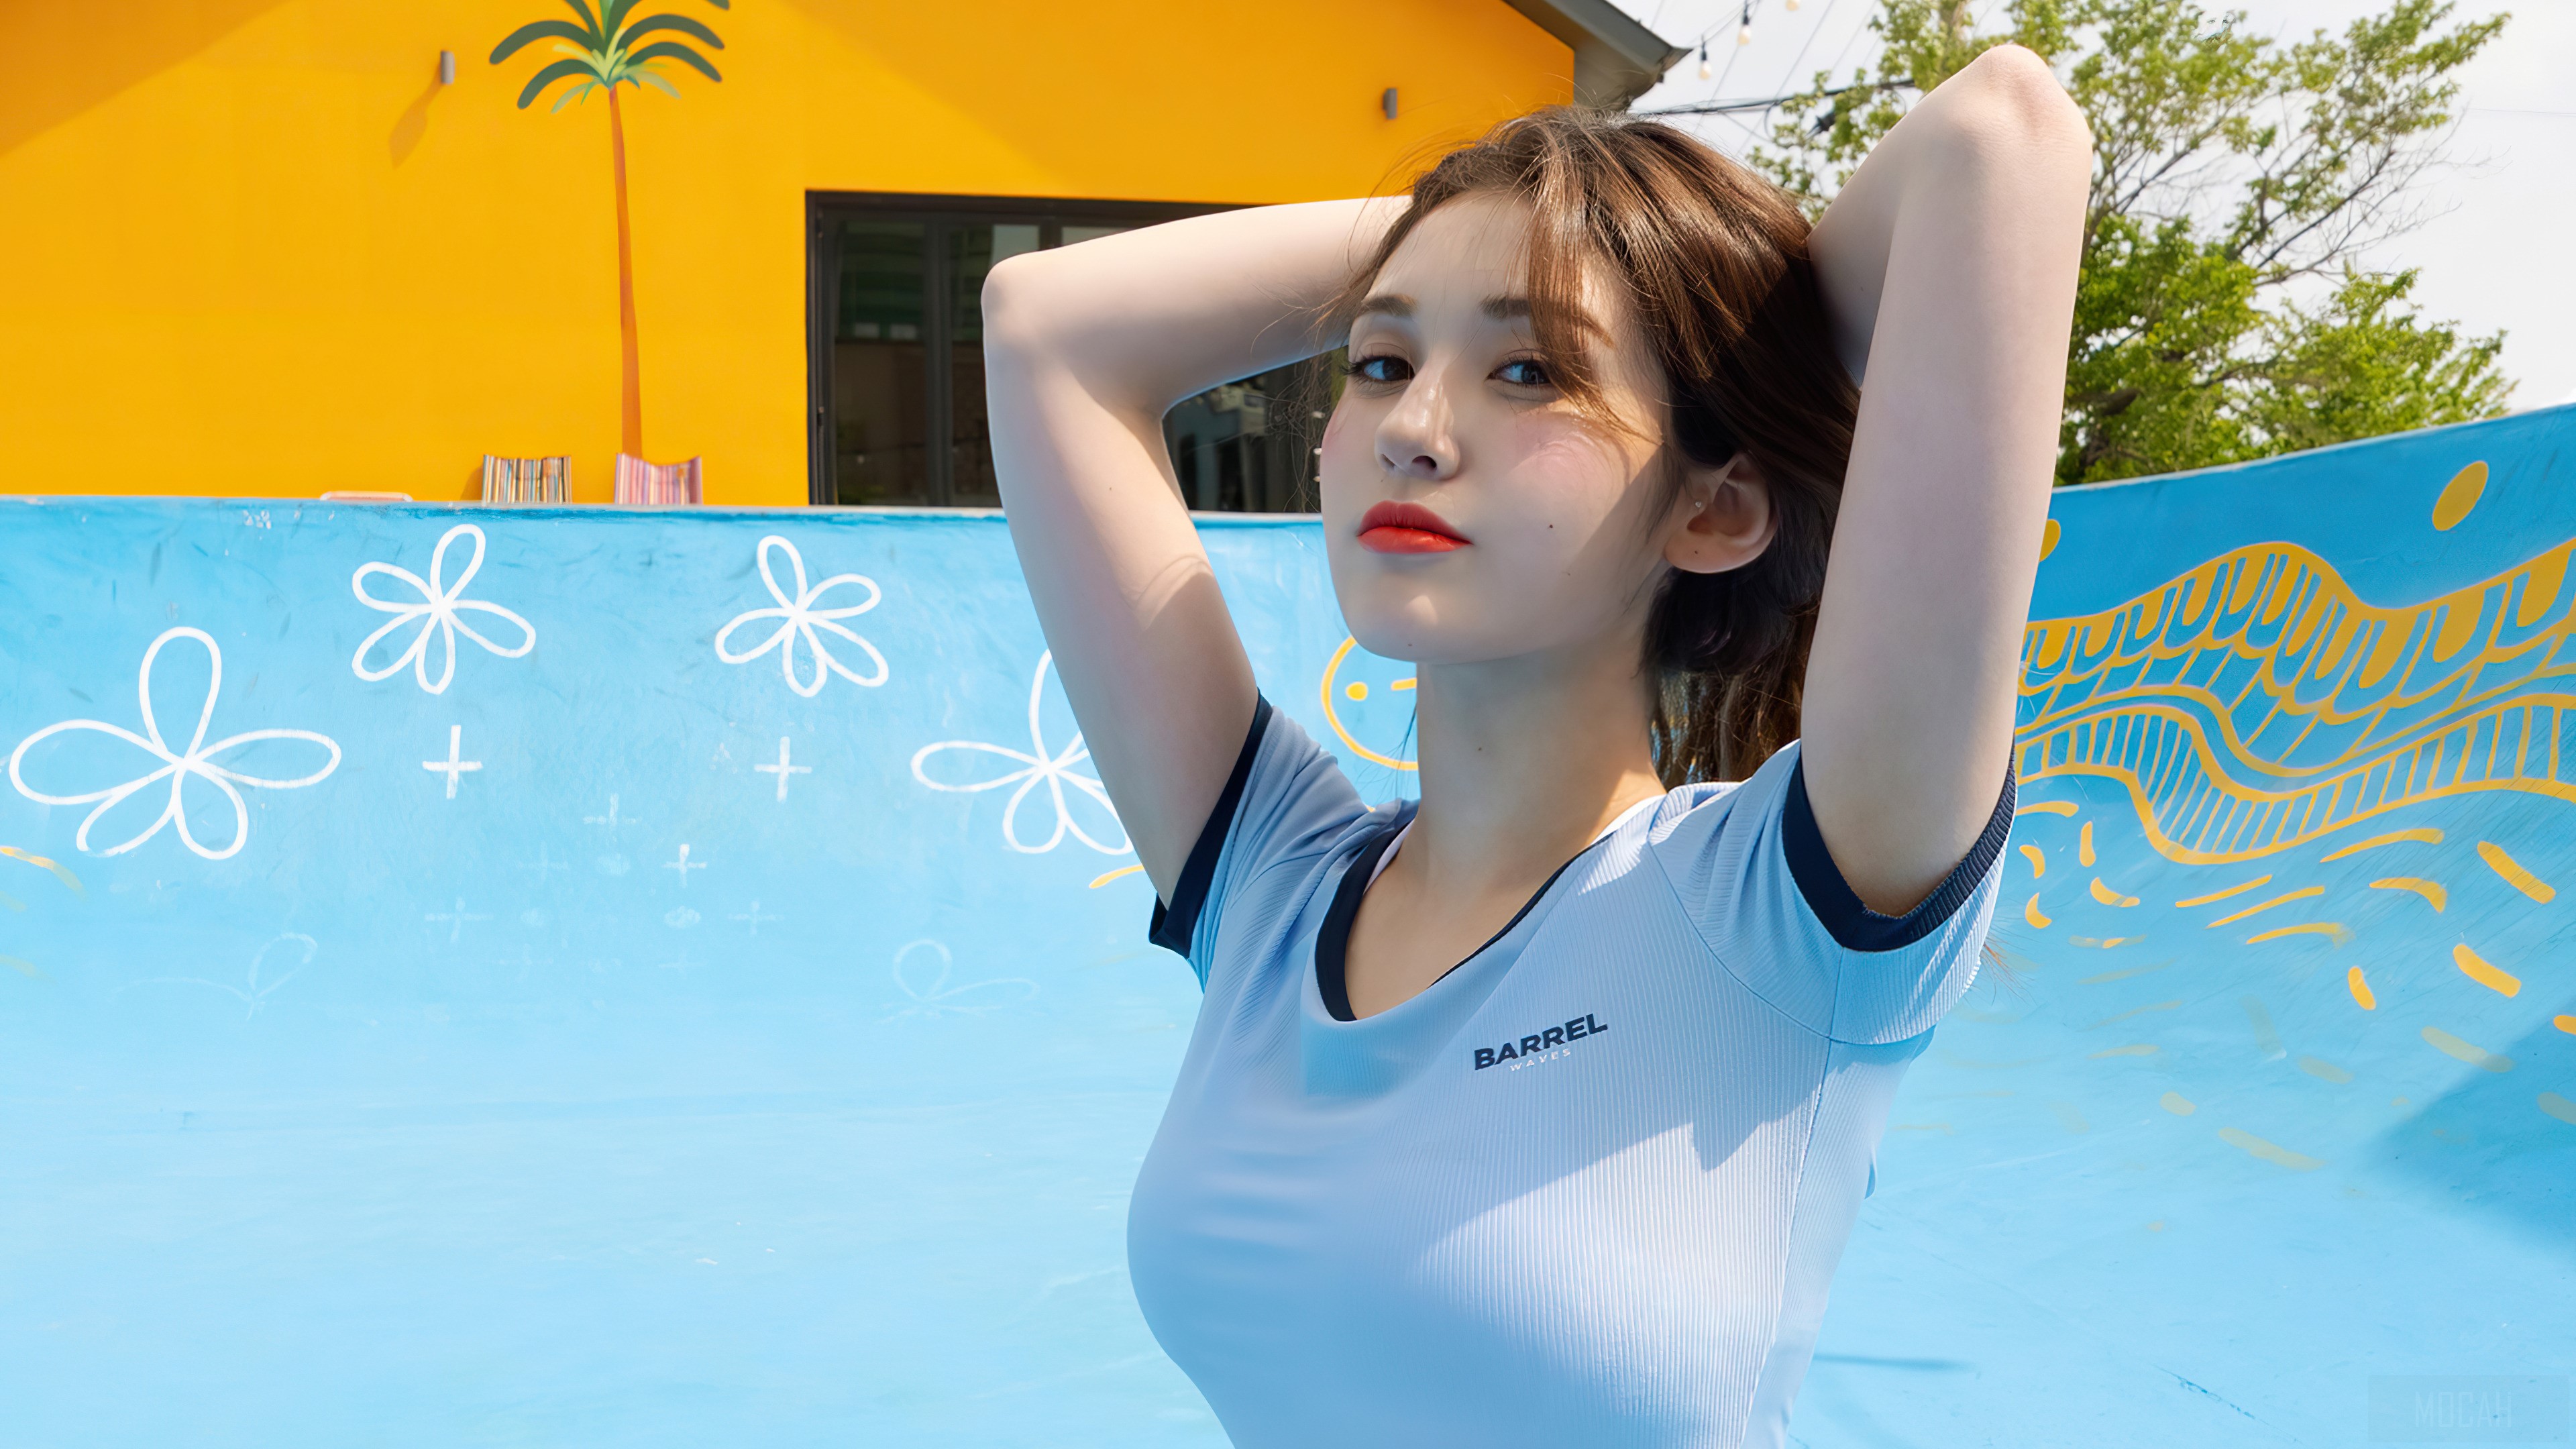 Asian Korean Women Blue T Shirt Hands On Head Looking At Viewer Somi 3840x2160